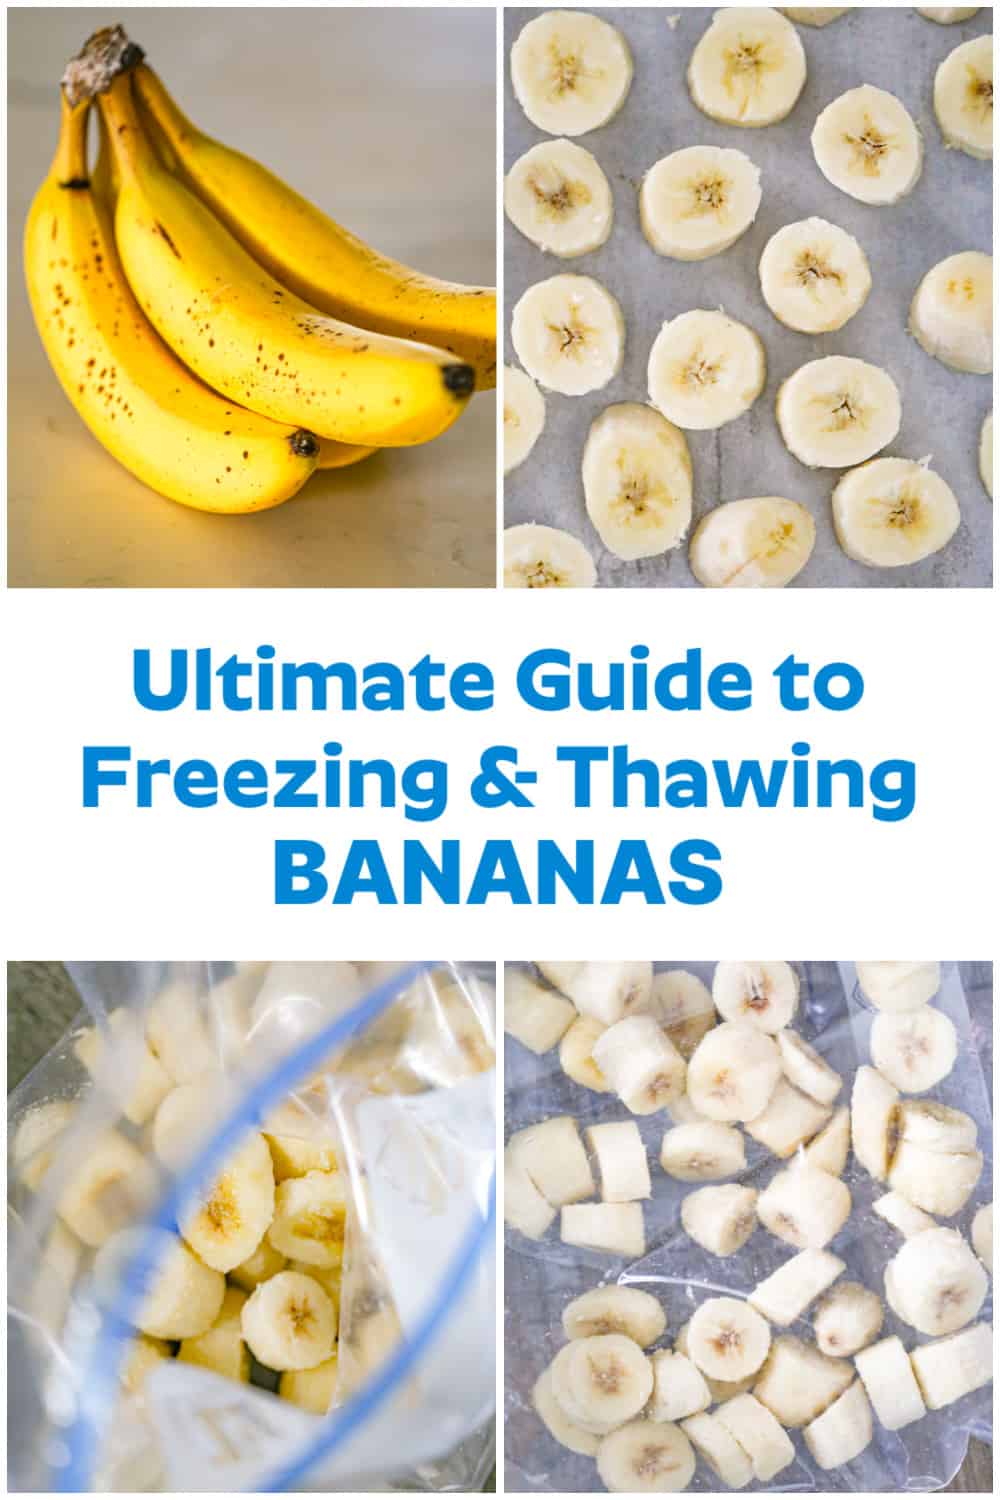 Freezing & Thawing Bananas